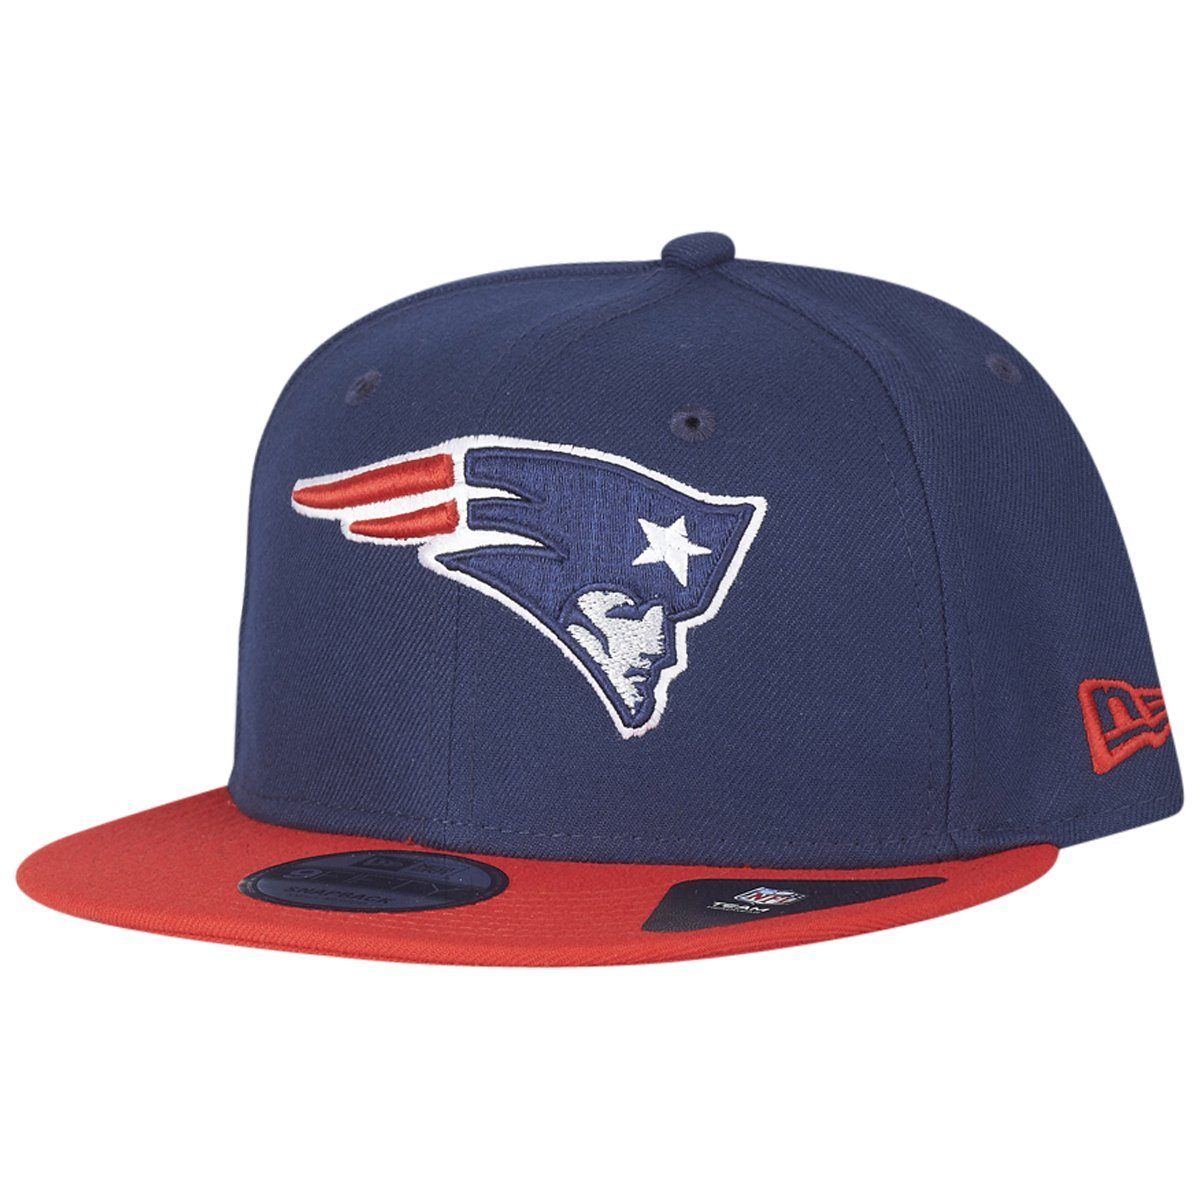 Herren Caps New Era Snapback Cap 9Fifty NFL New England Patriots